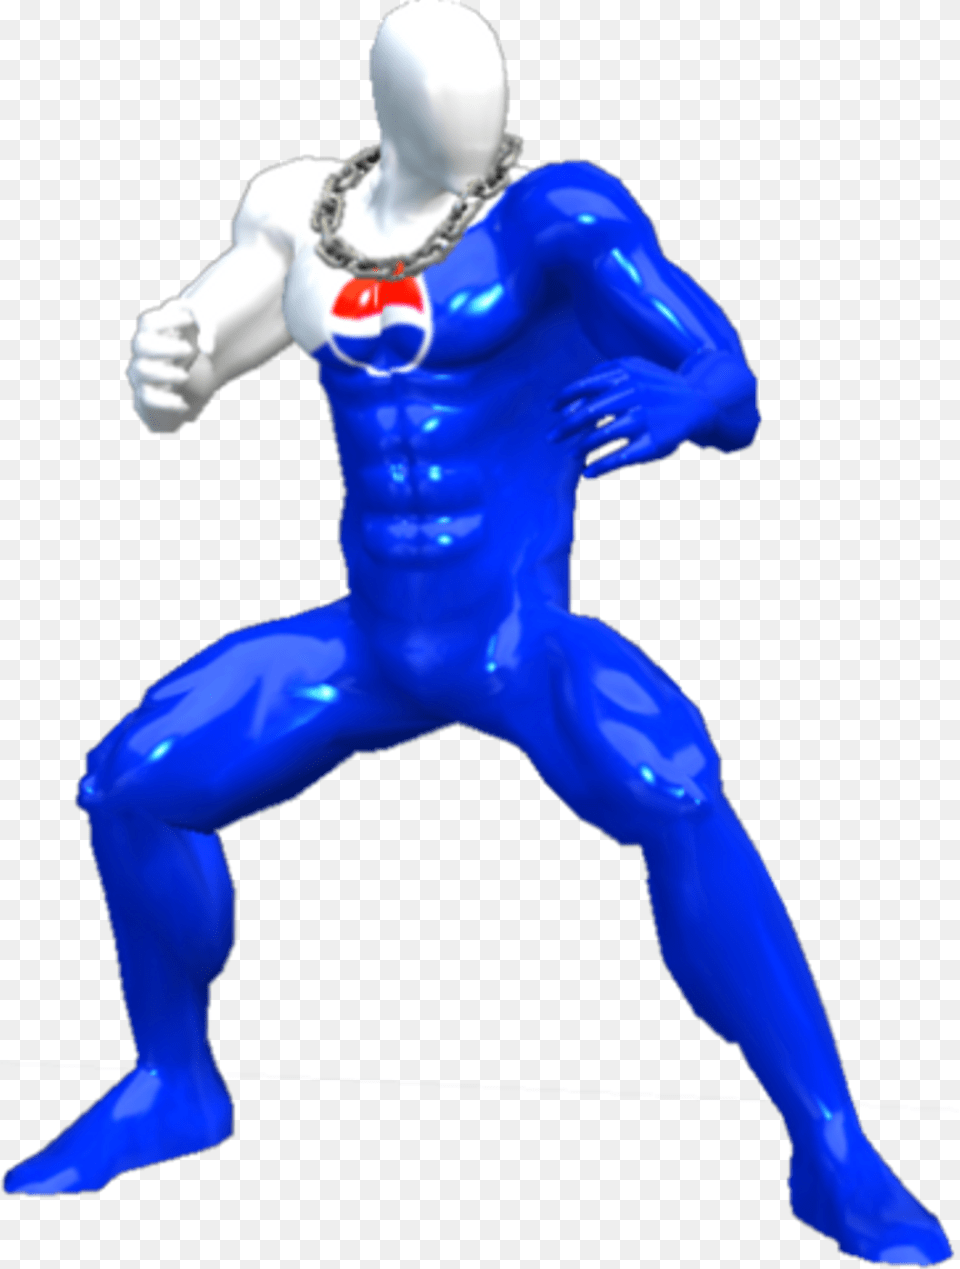 Pepsiman Sticker Captain Falcon Pepsi Man, Adult, Male, Person, Accessories Free Png